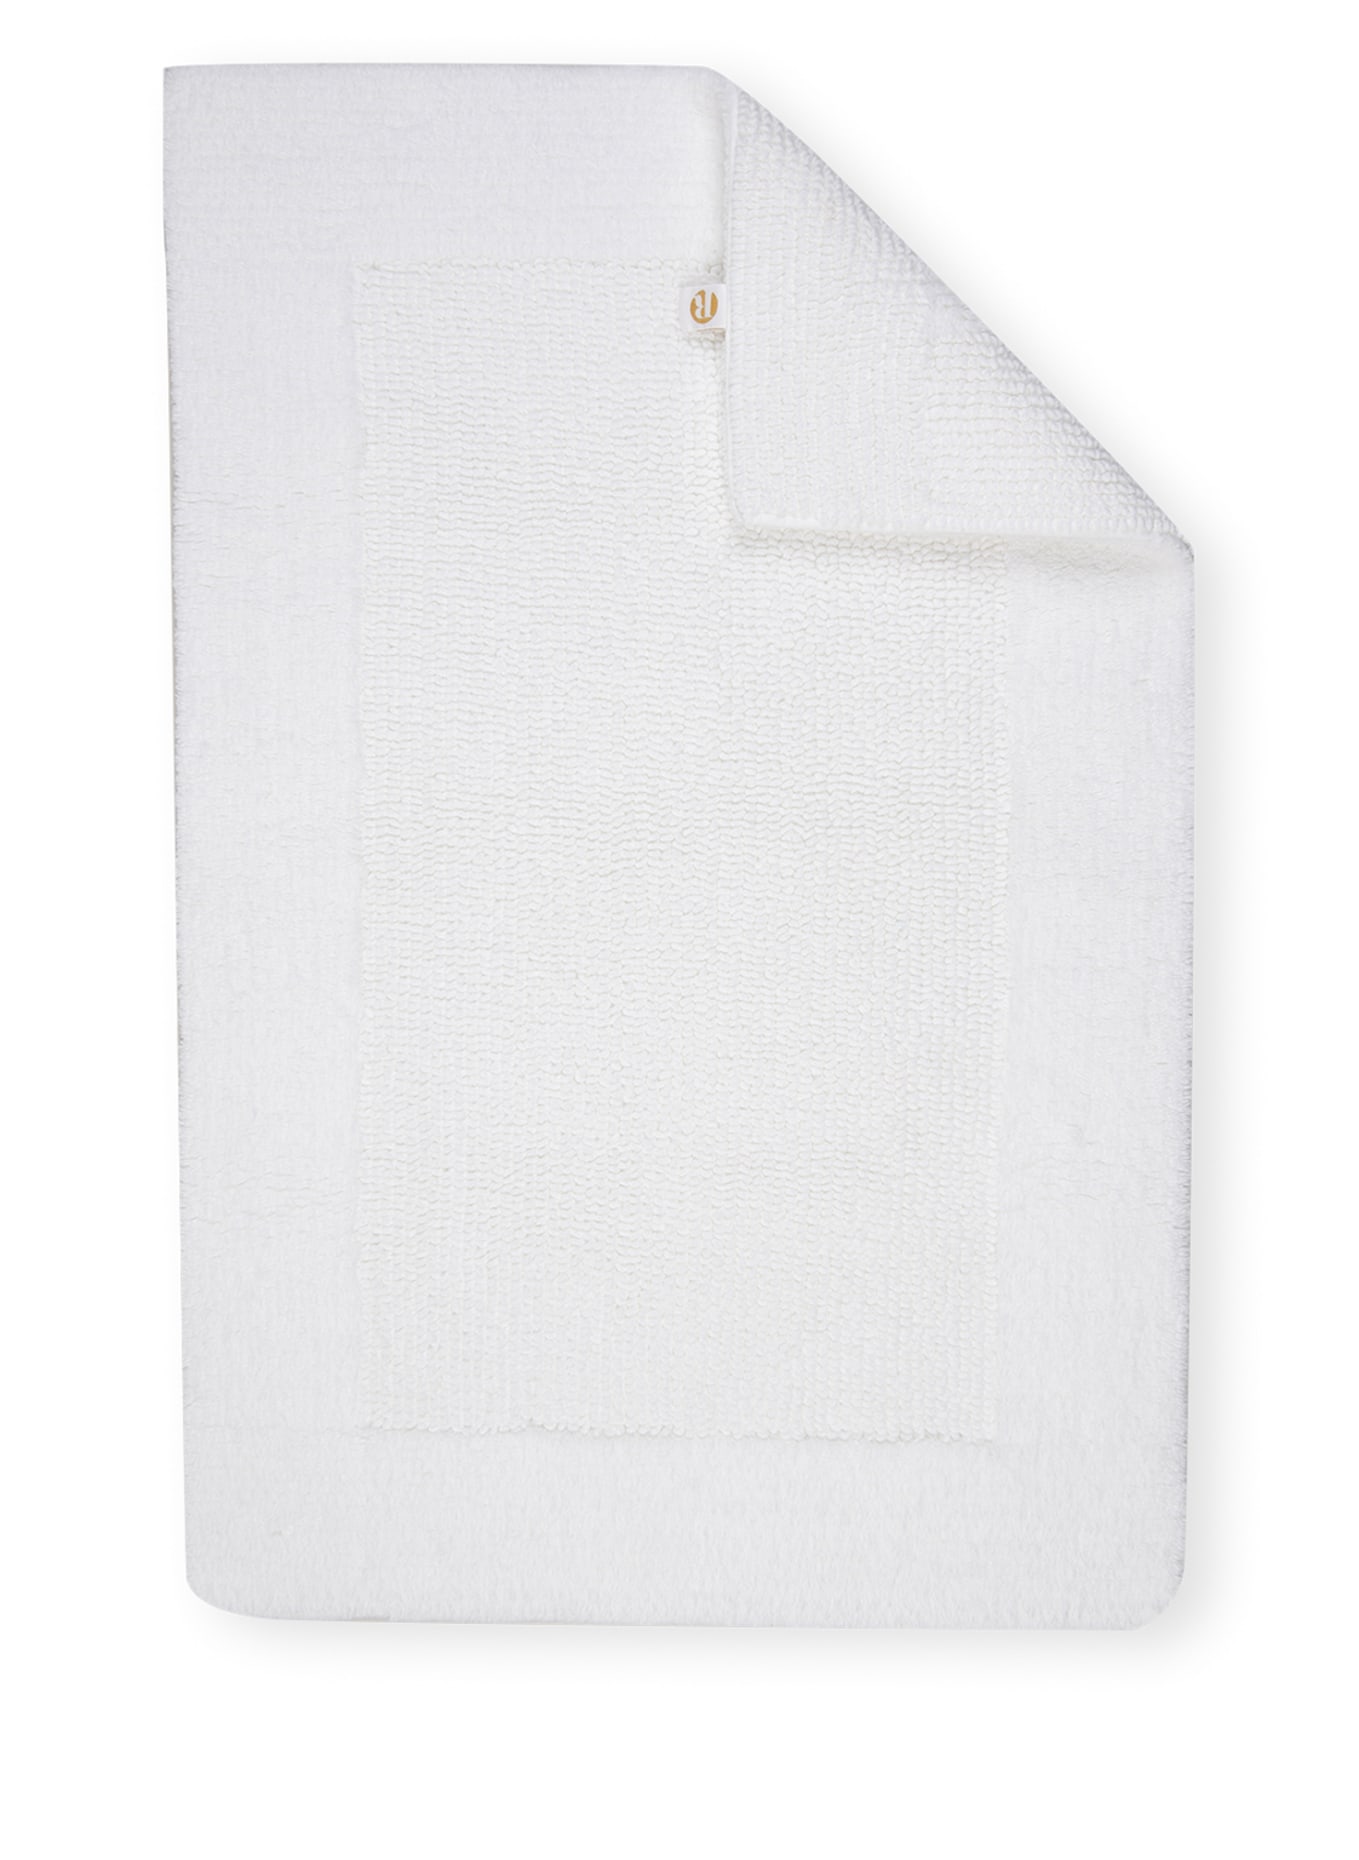 EB HOME Bath mat PRESTIGE reversible, Color: WHITE (Image 1)